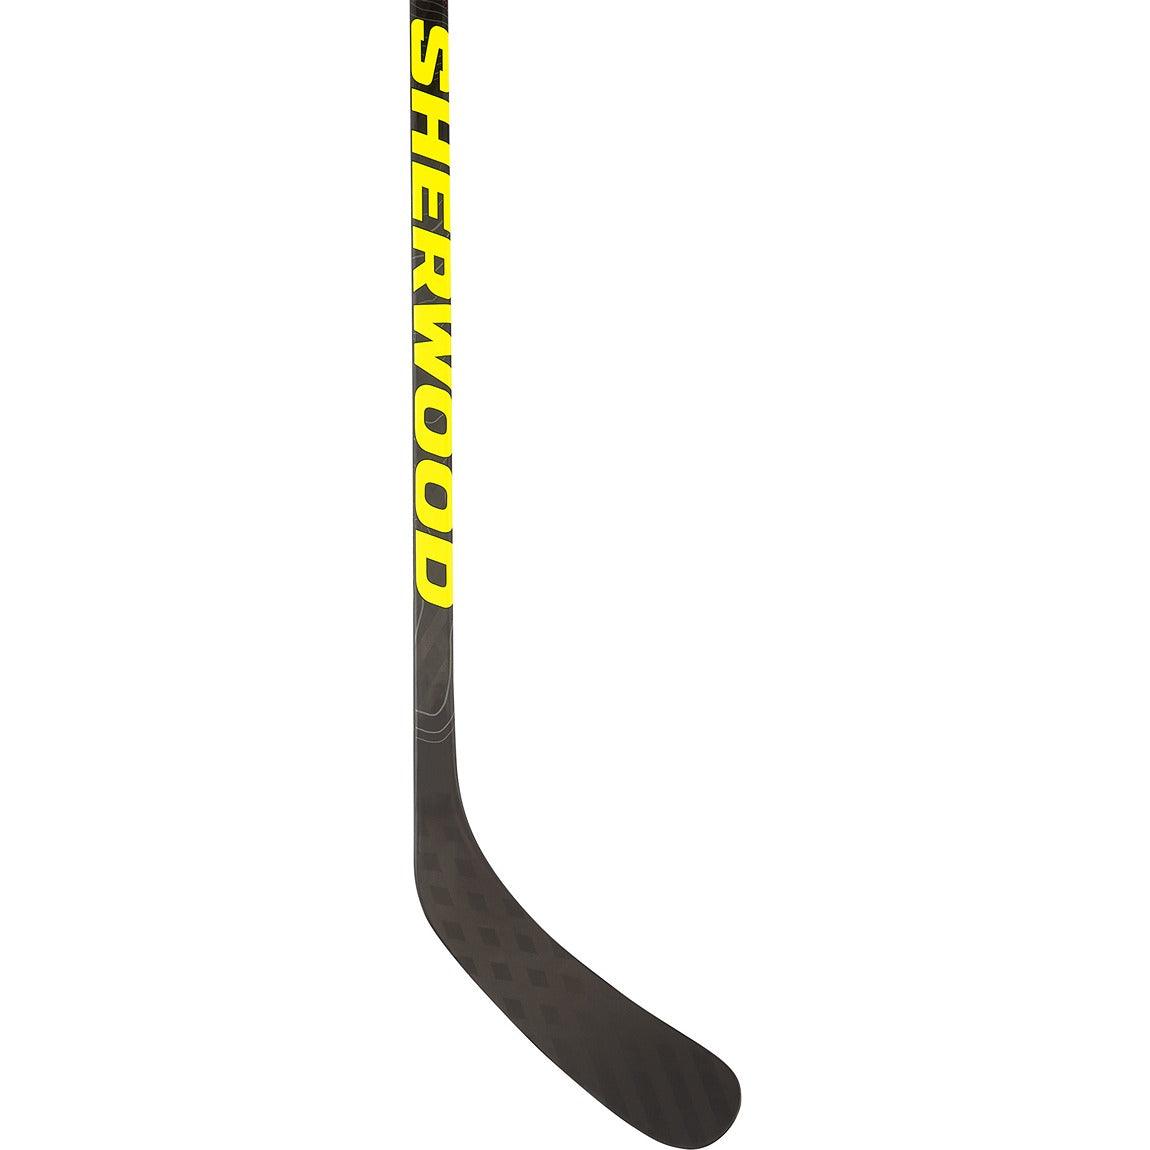 Sherwood Rekker Legend 3 Hockey Stick 